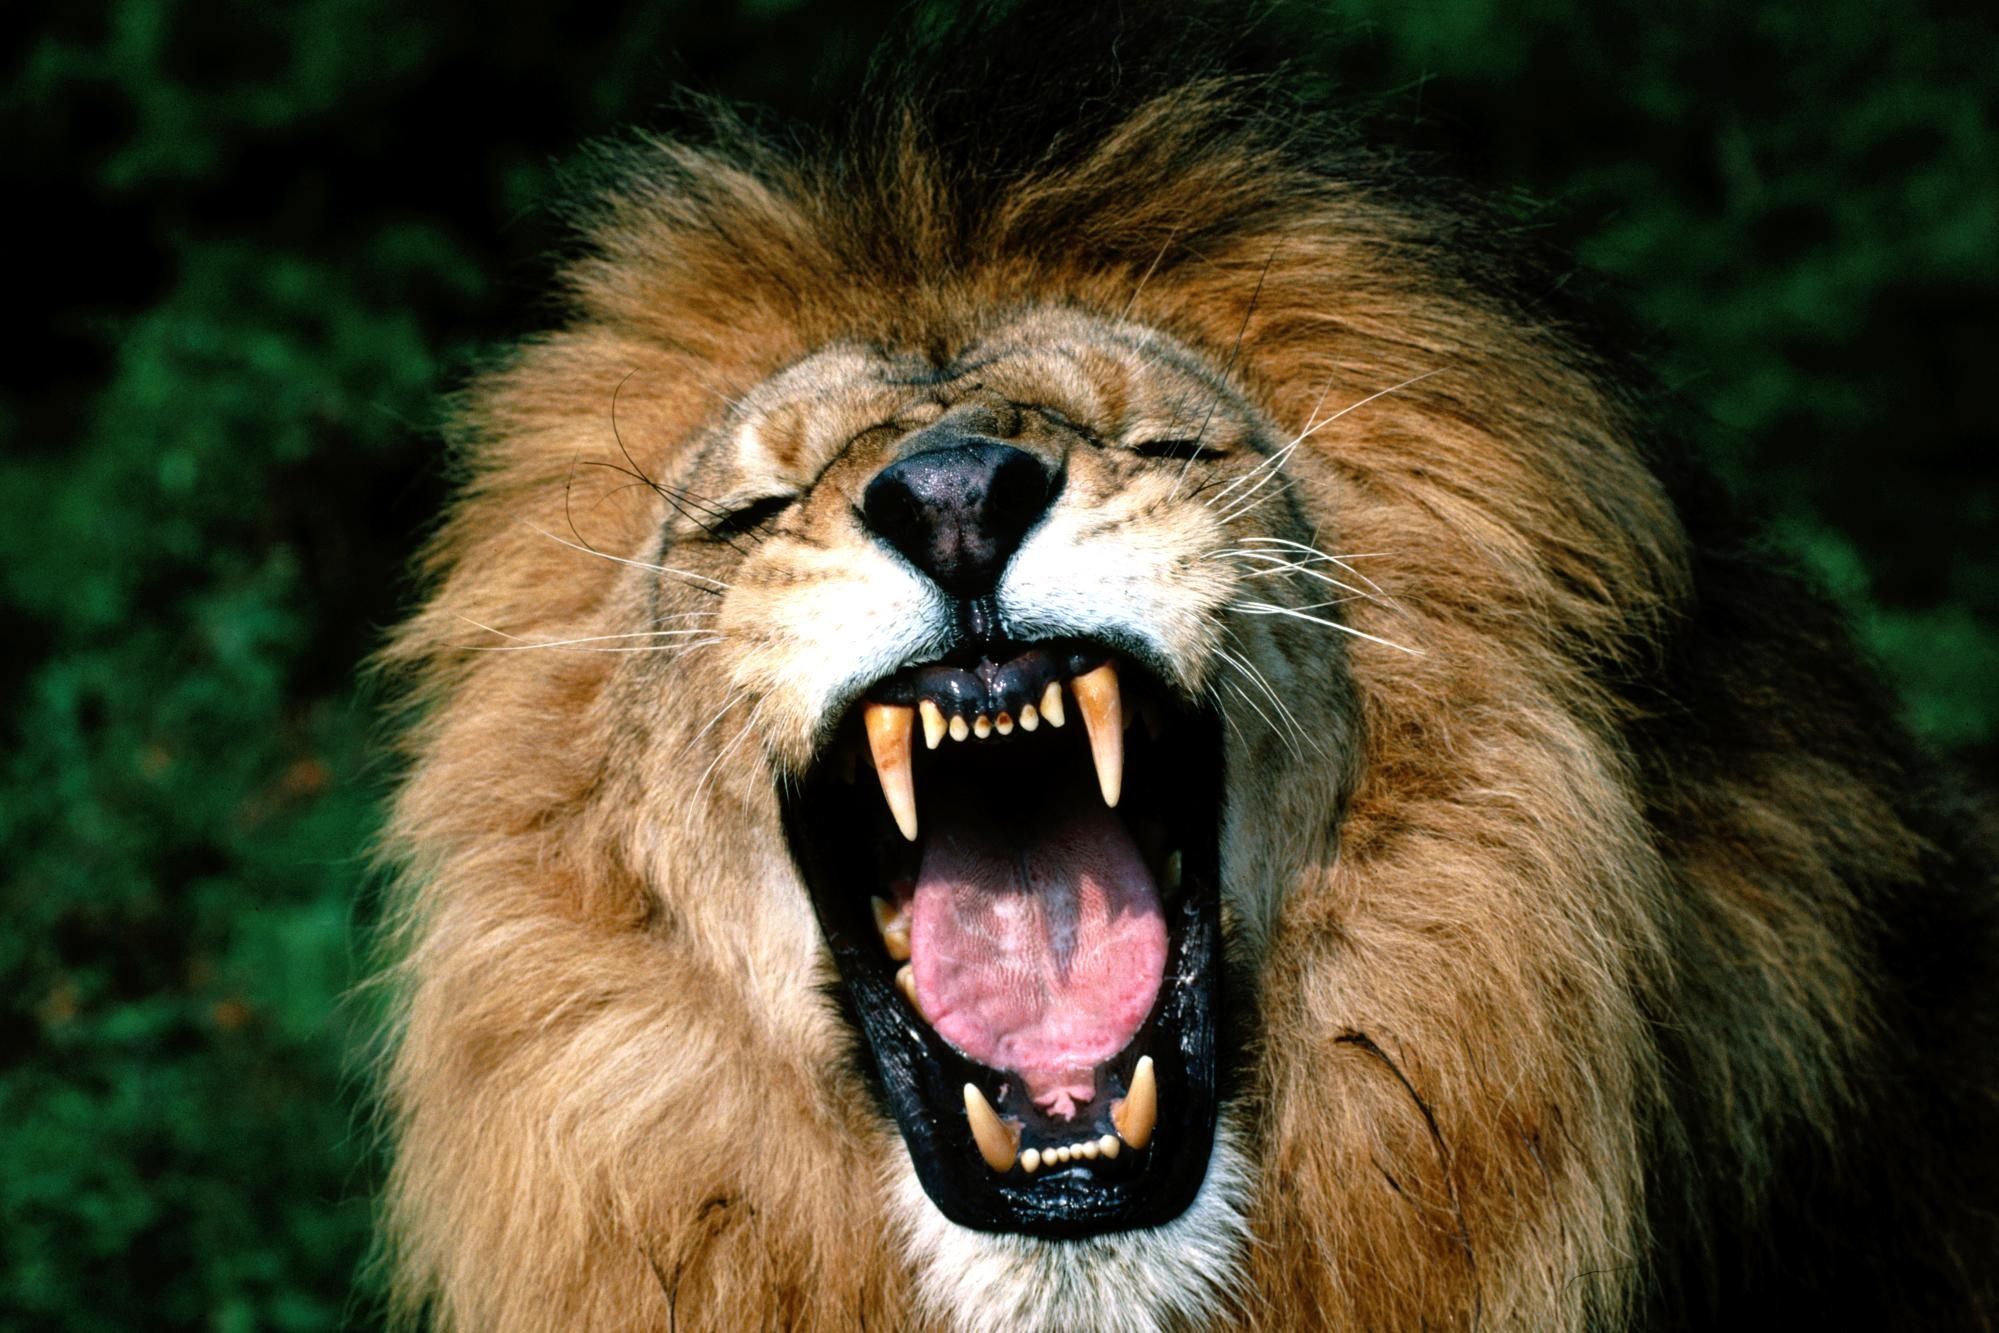 lion roaring face images